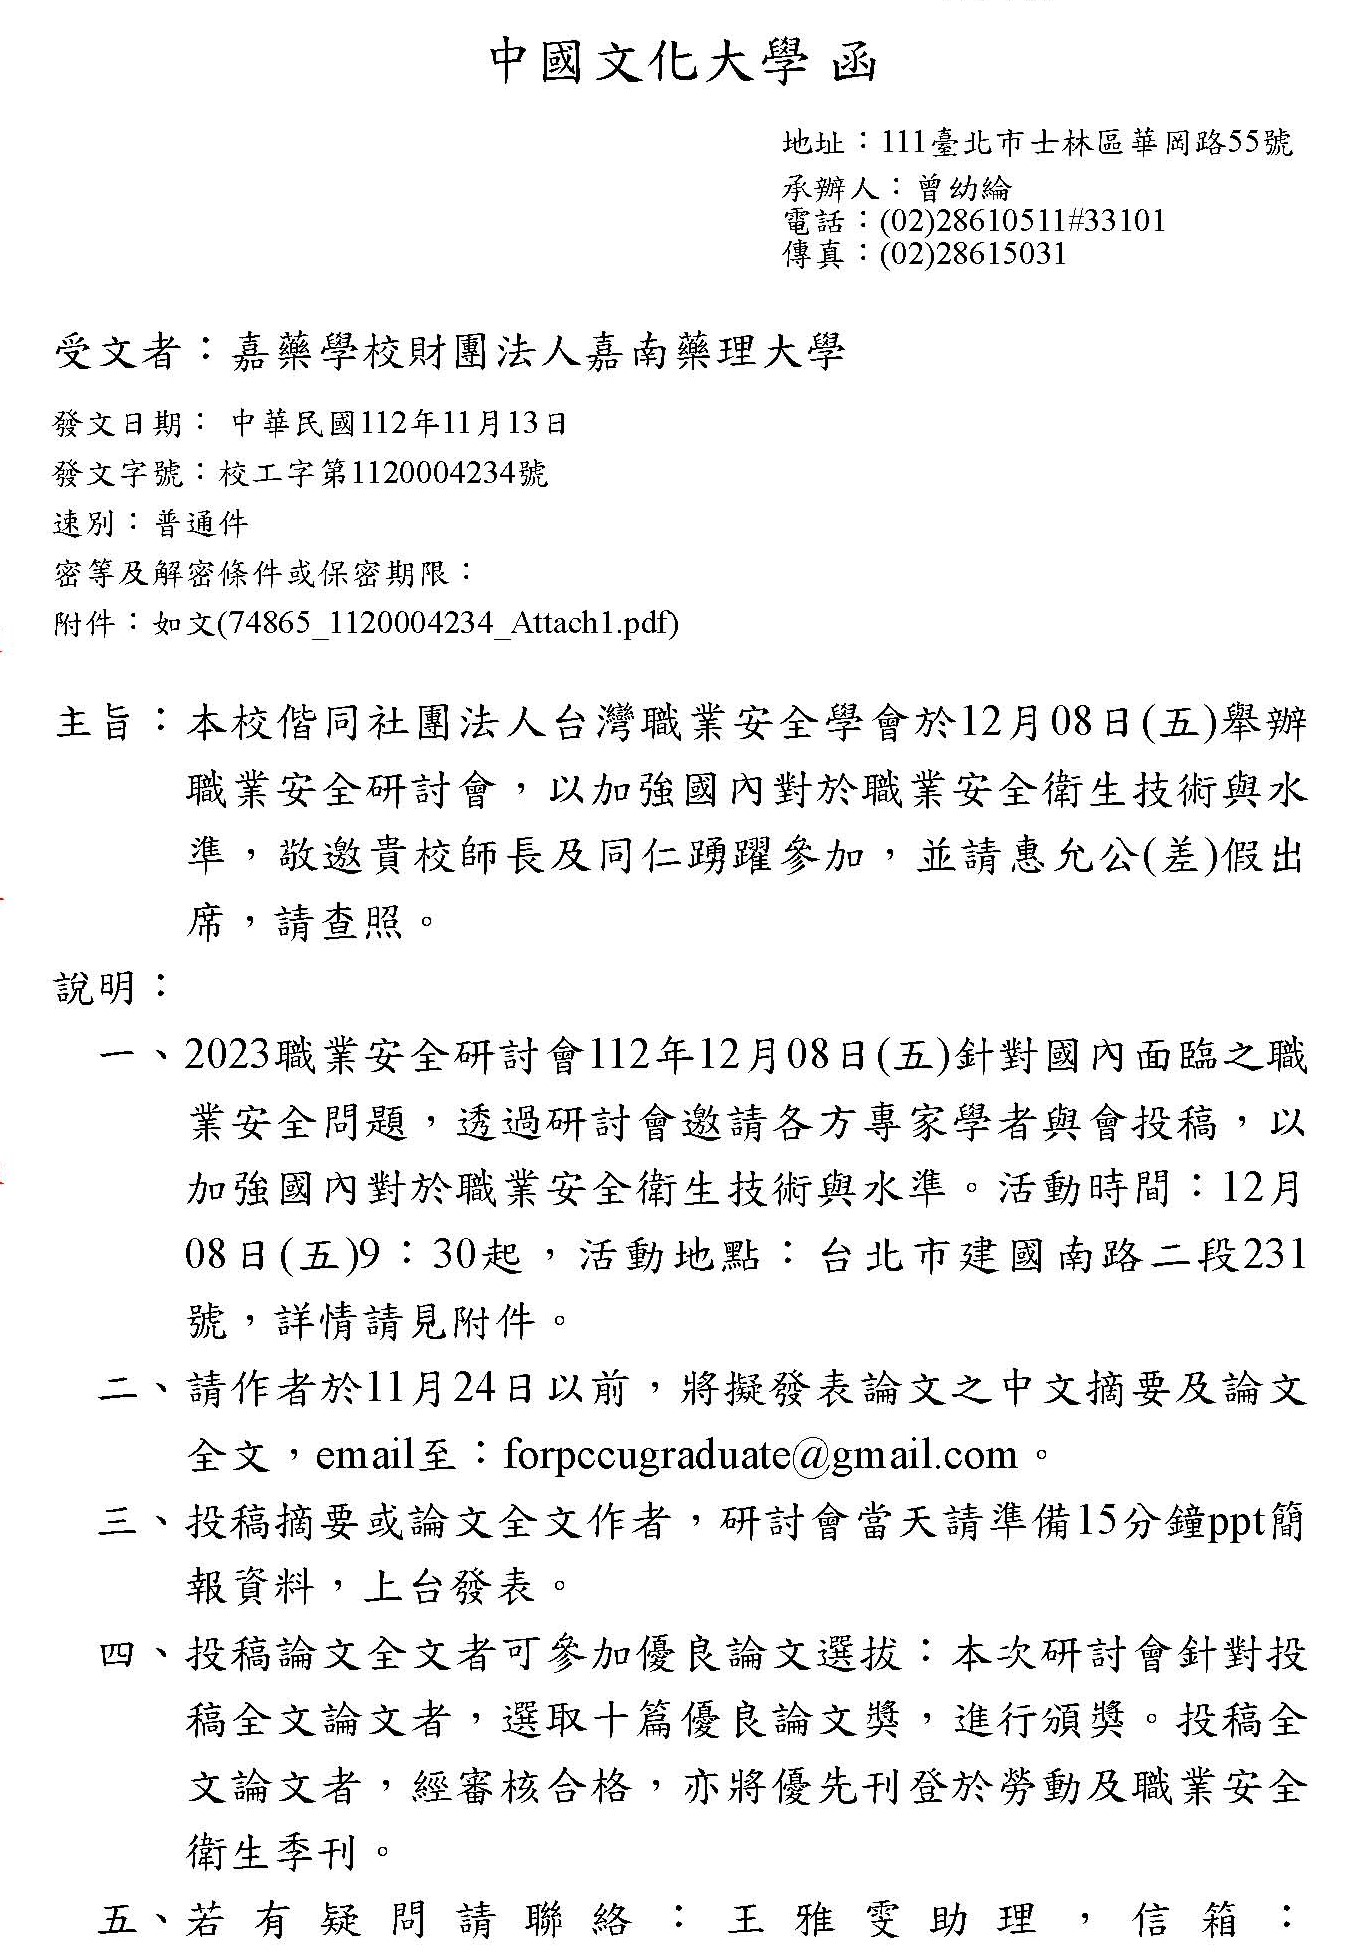 中國文化大學來文--職業安全研討會_頁面_1